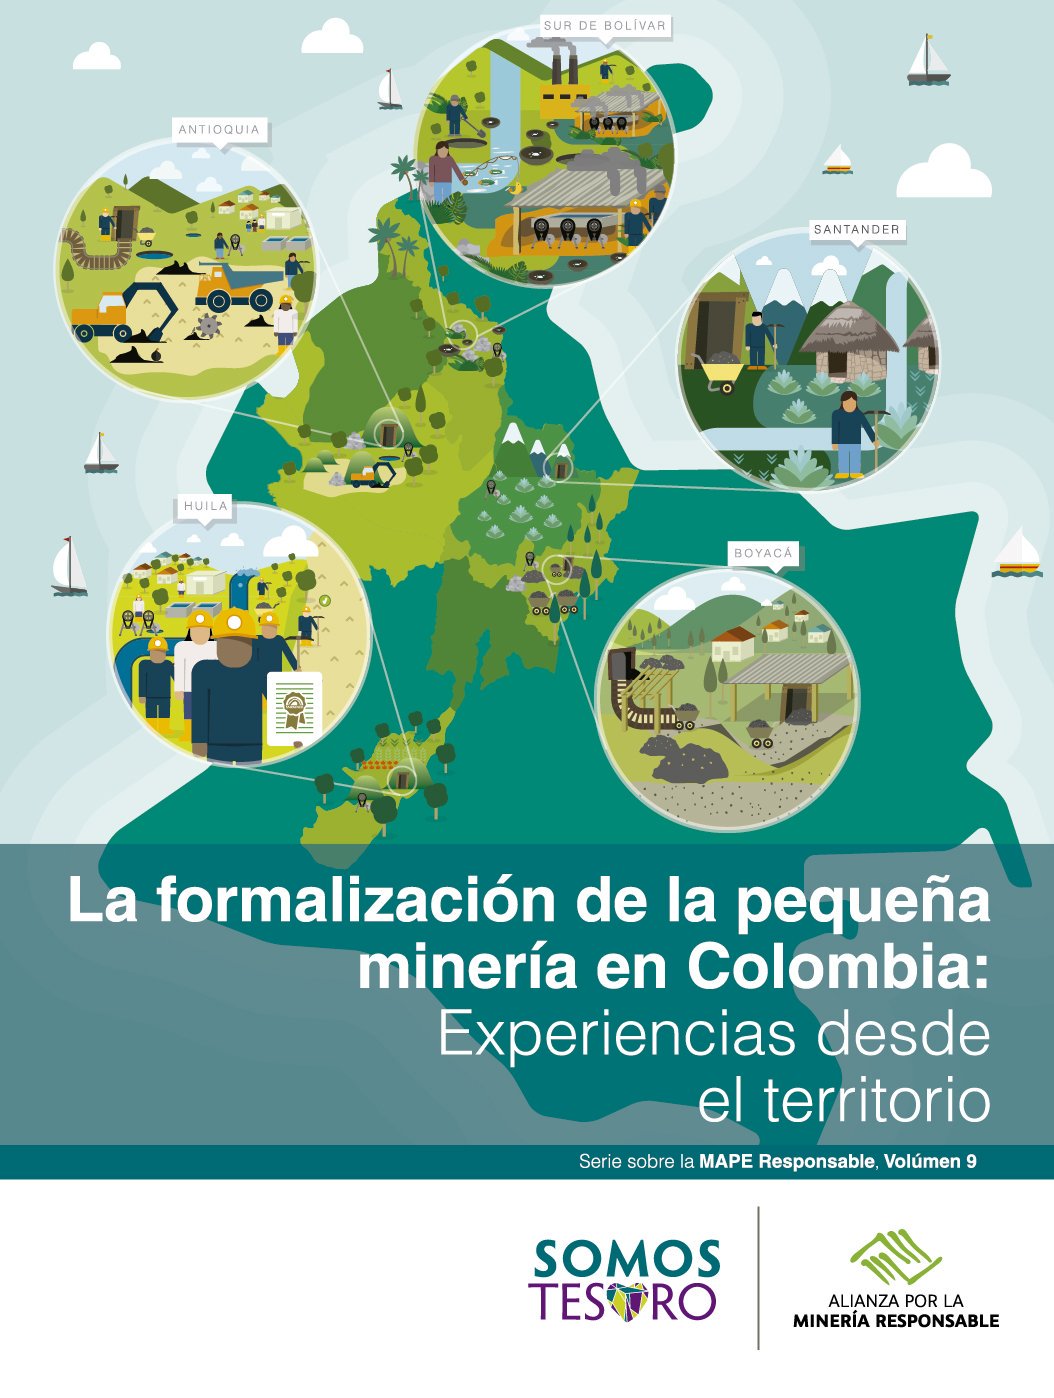 Para entender mejor la formalización de la minería artesanal y de pequeña escala (#ASM) en Colombia https://t.co/8IwvX3uFpd  #shareASM @IIED https://t.co/Ir1dredJdr